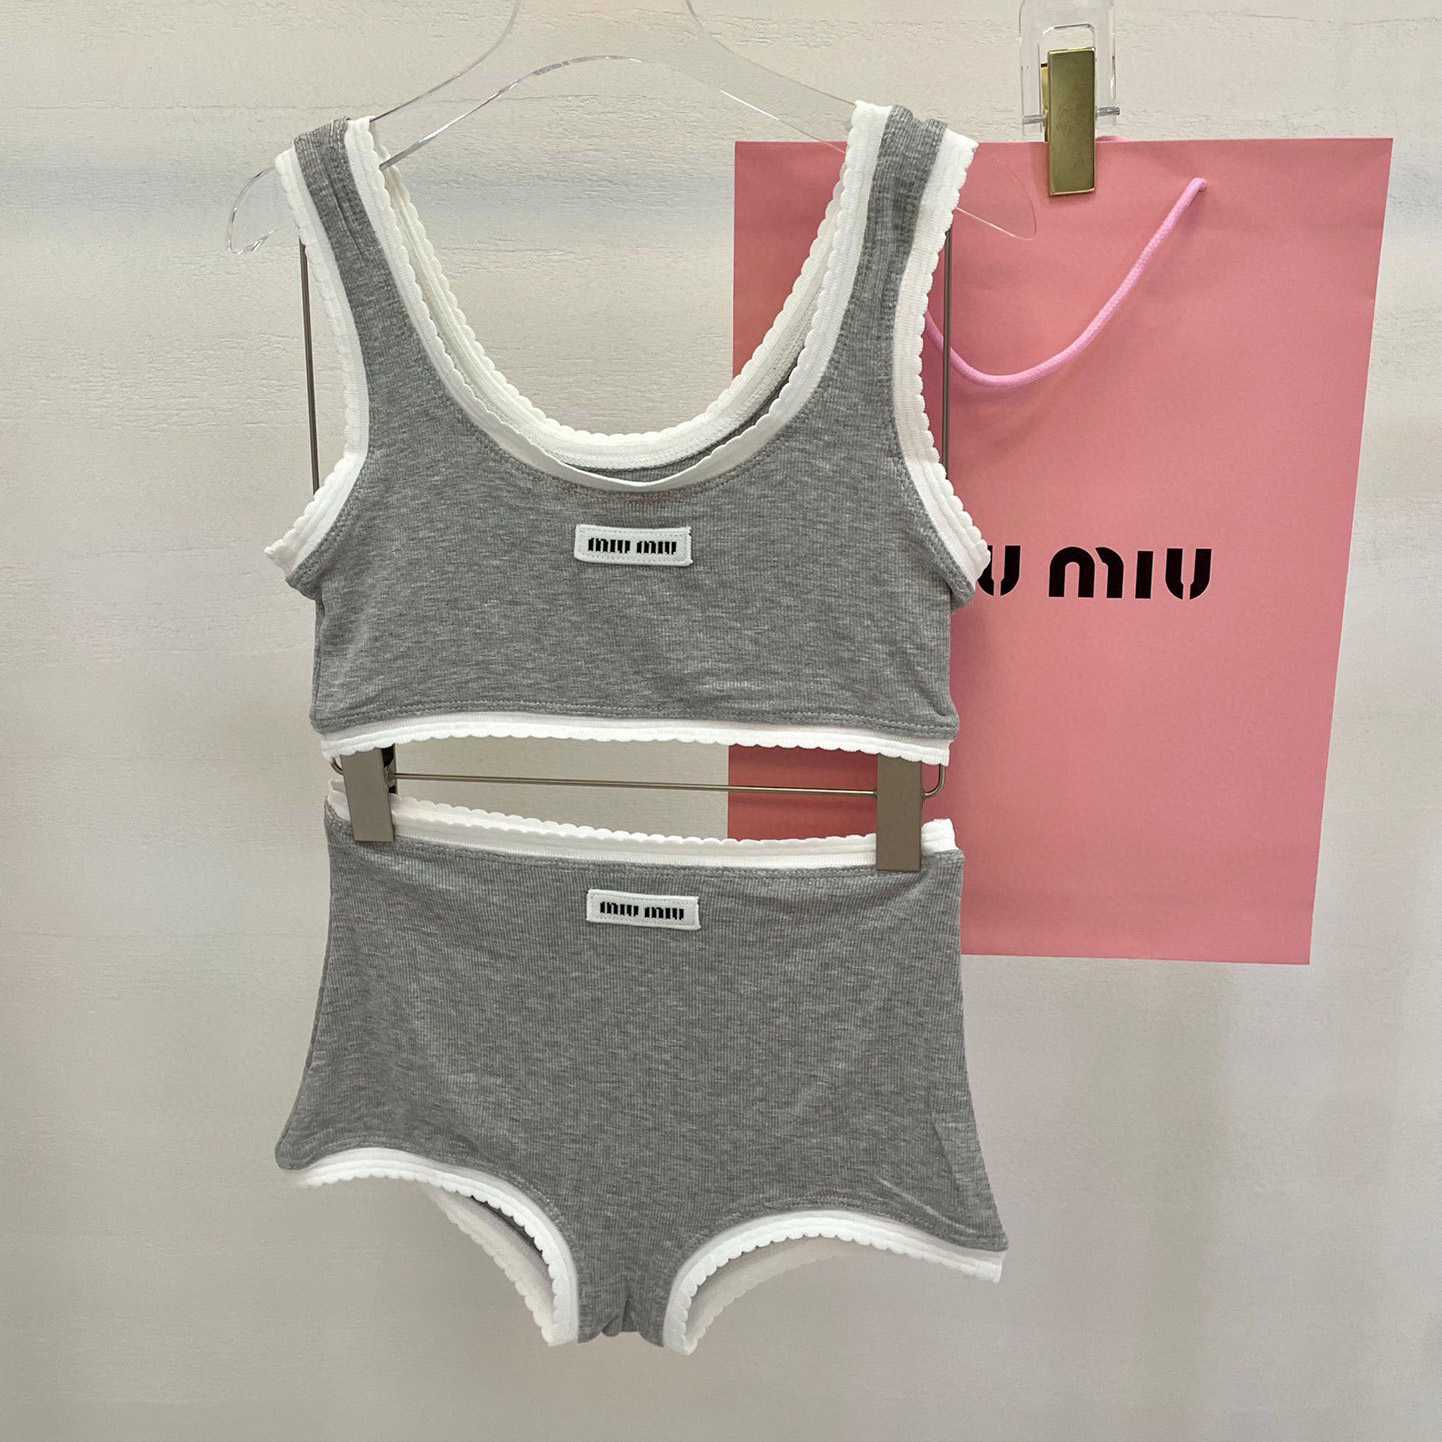 Miu Miu Two-piece Swimsuit - DesignerGu